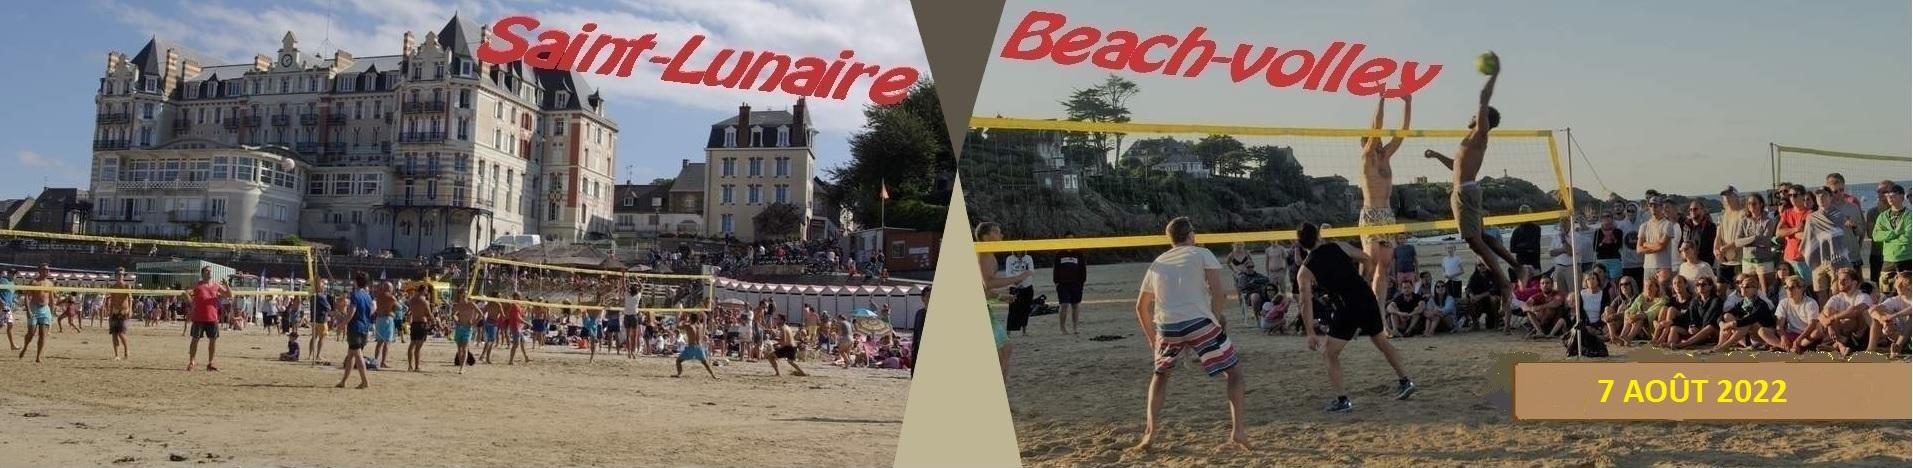 Tournoi de beach-volley de Saint-Lunaire